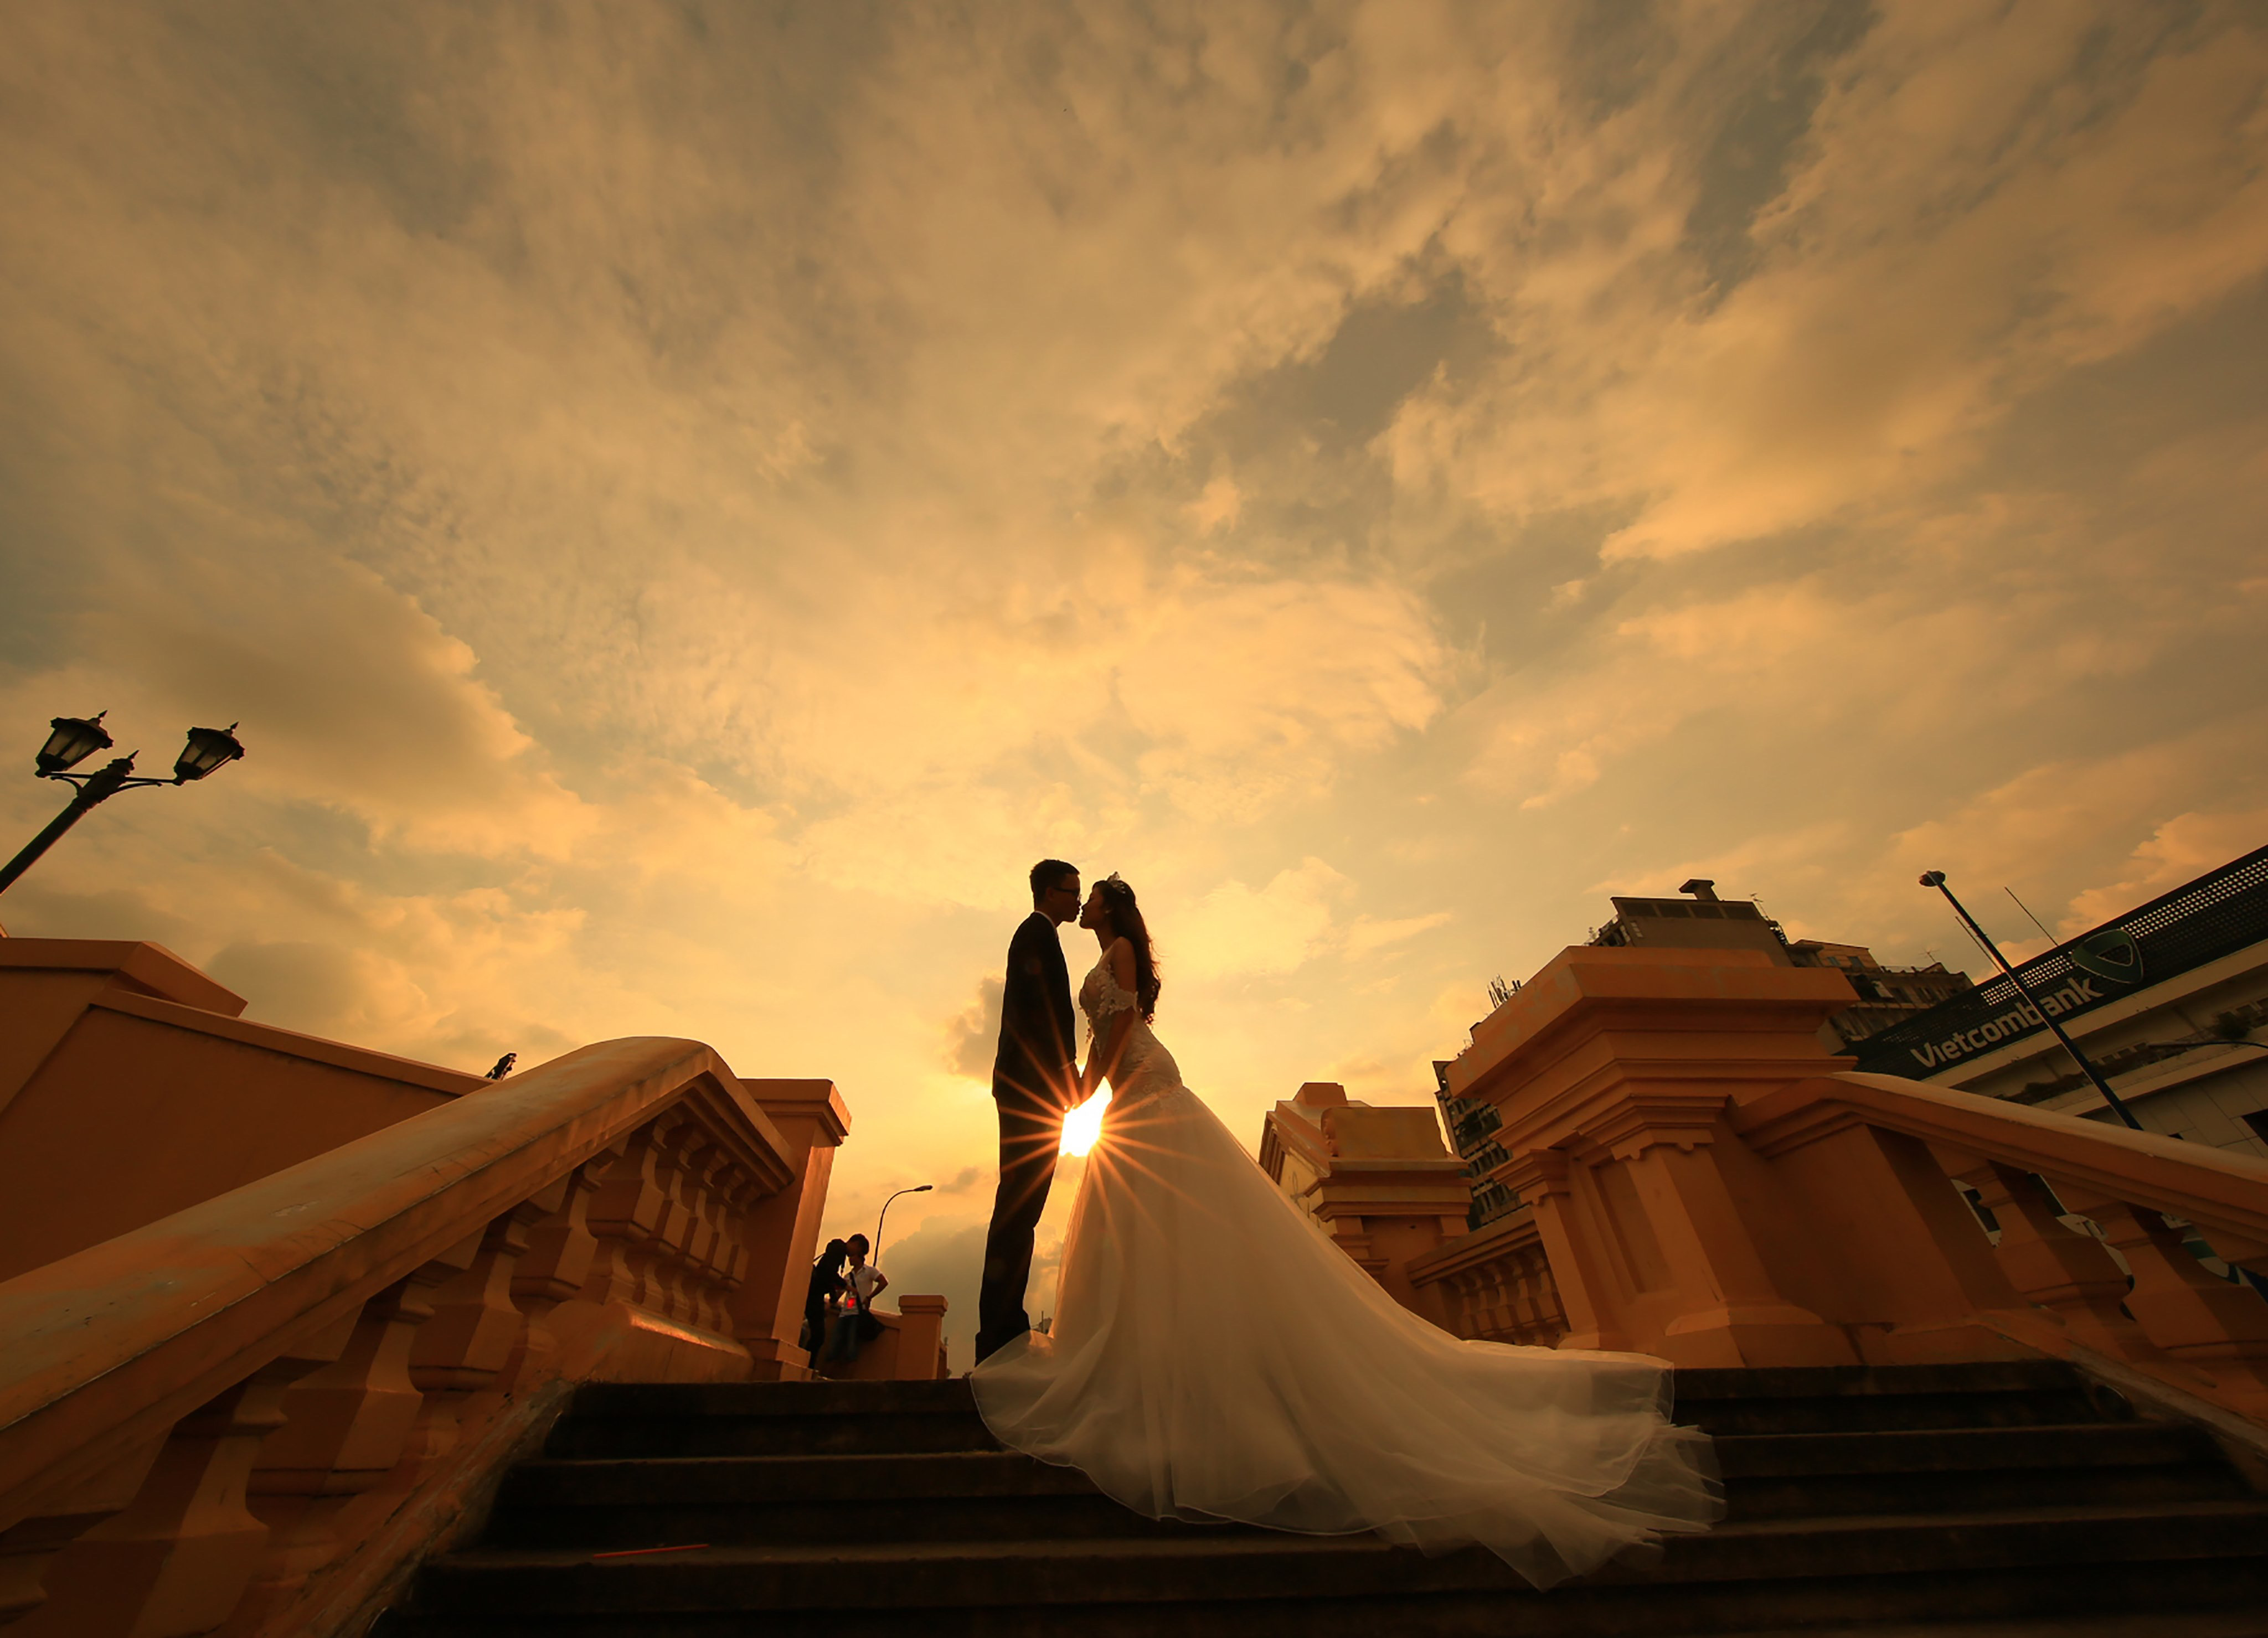 Xếp hạng 10 studio chụp ảnh cưới đẹp nhất Thành phố Hồ Chí Minh - 9X Wedding Studio